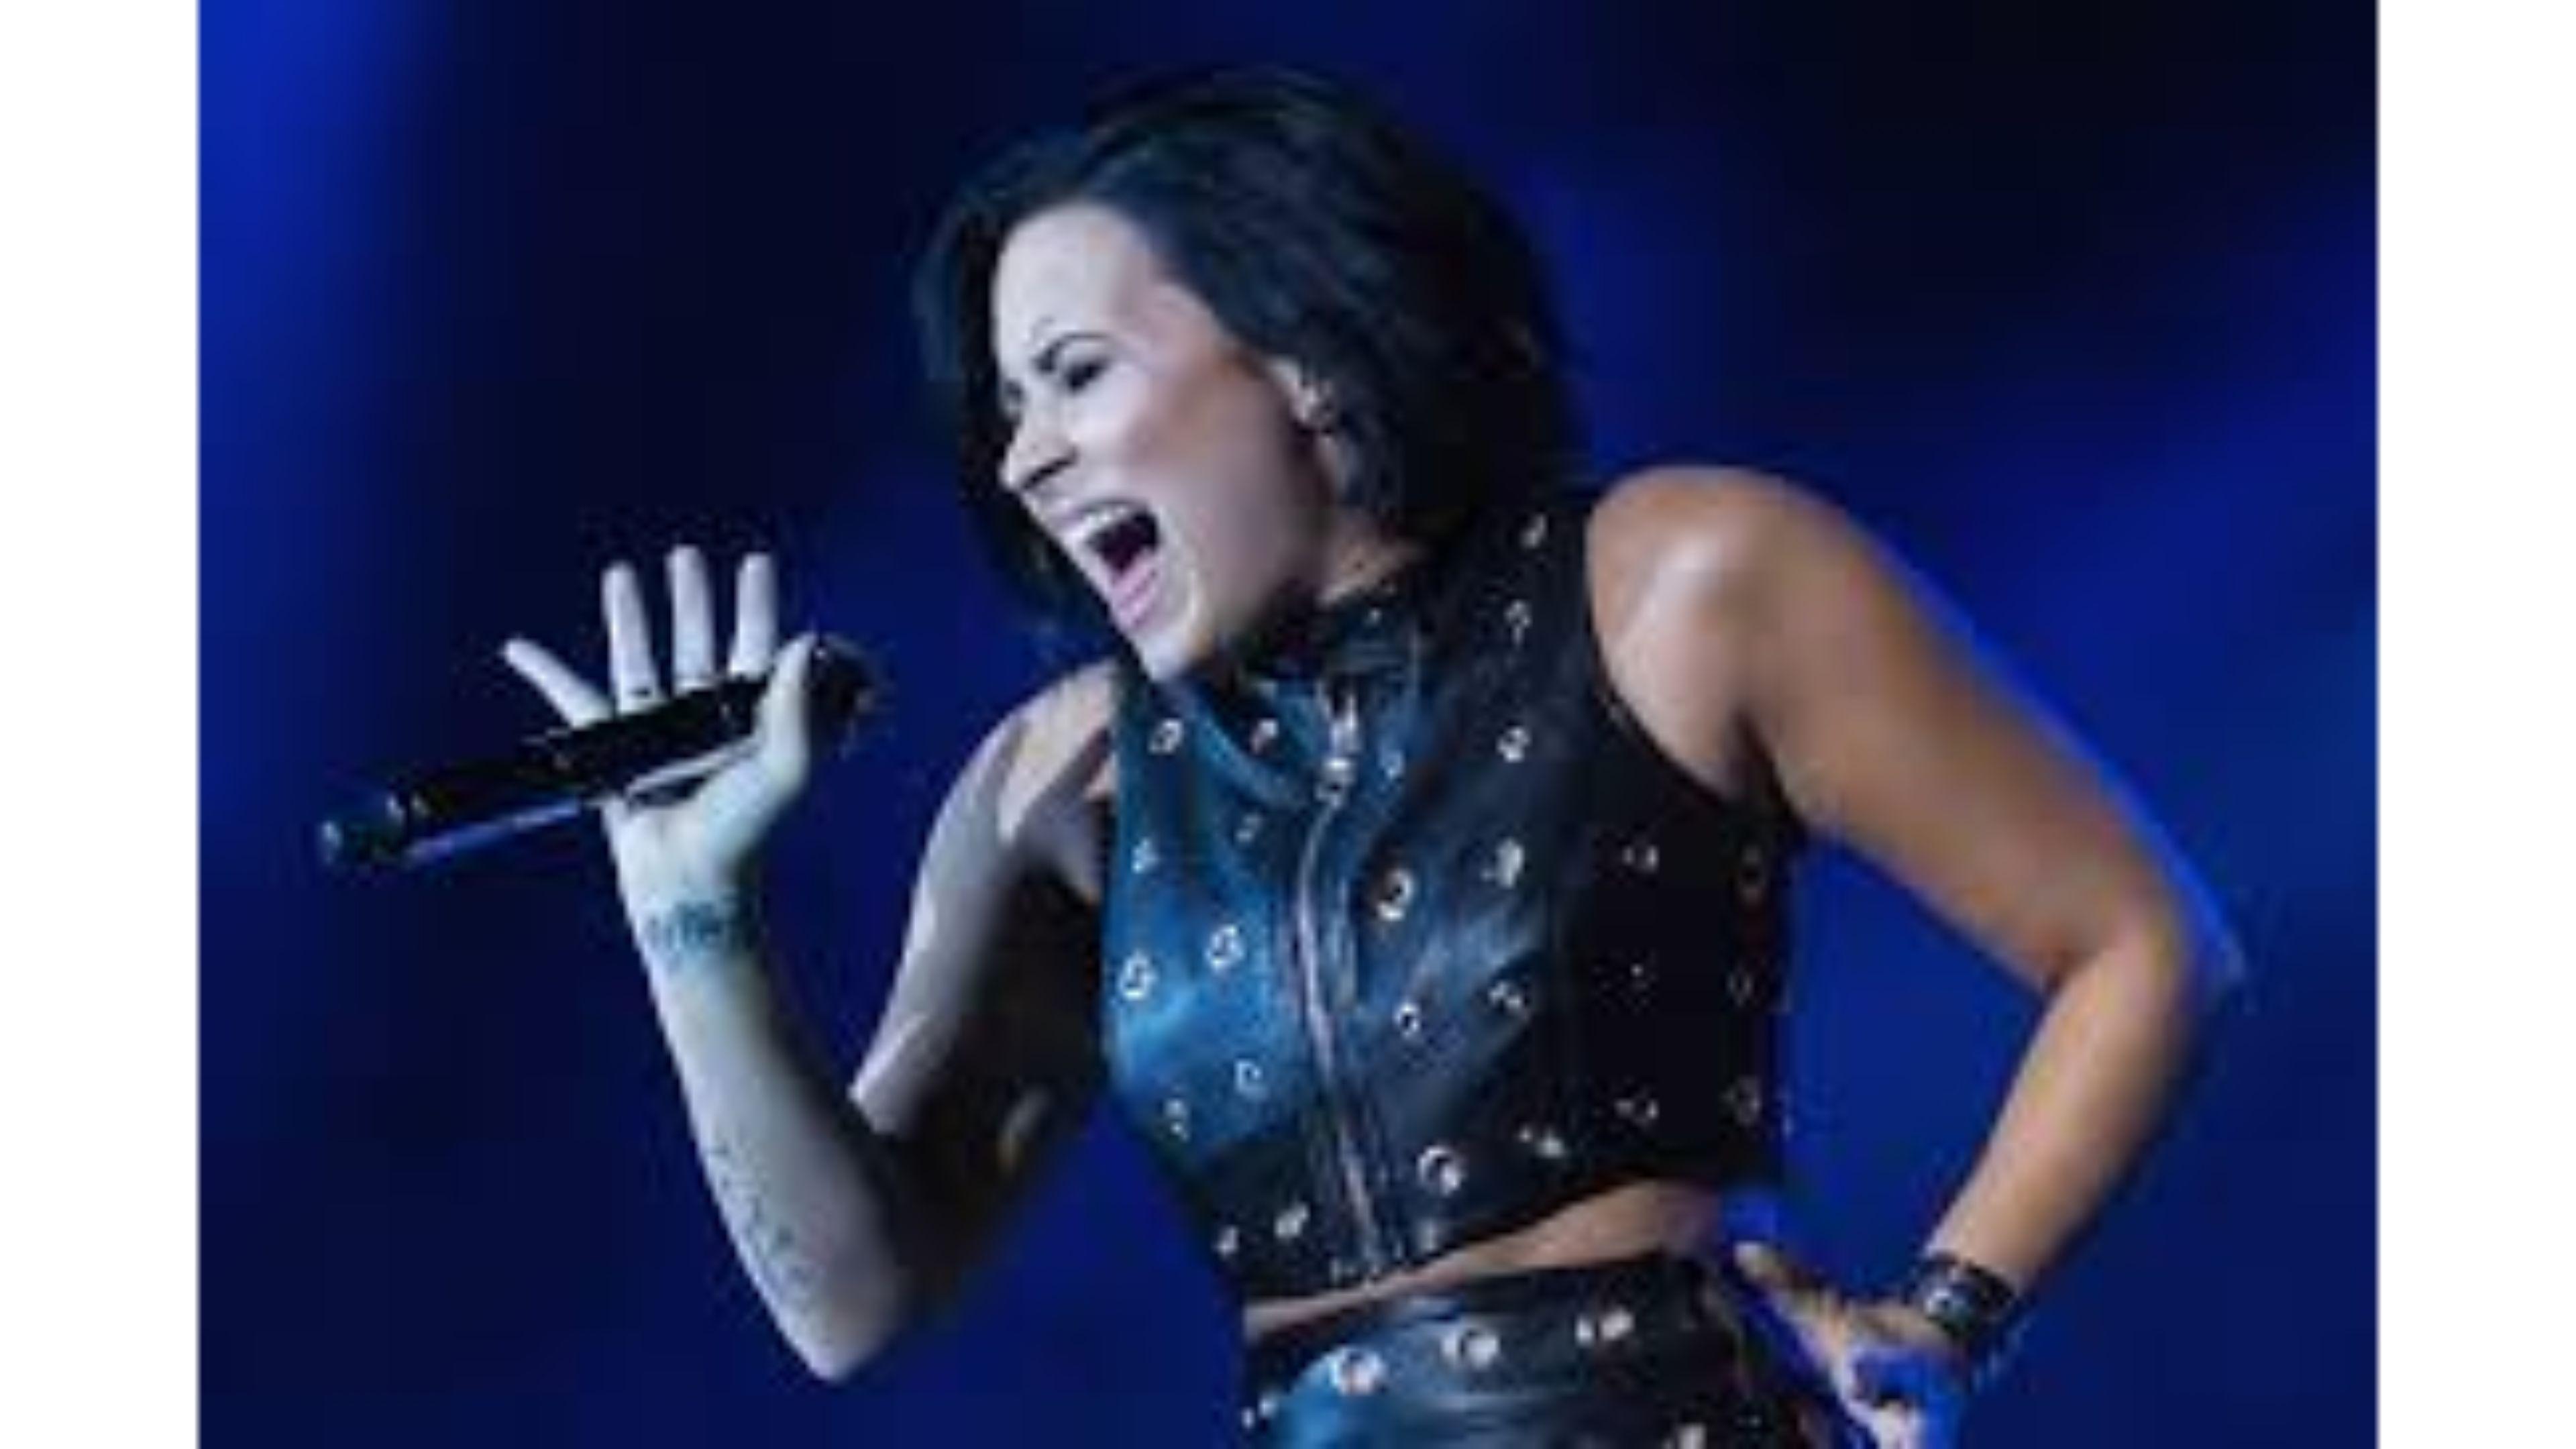 Singer 2016 4K Demi Lovato Wallpaper. Free 4K Wallpaper